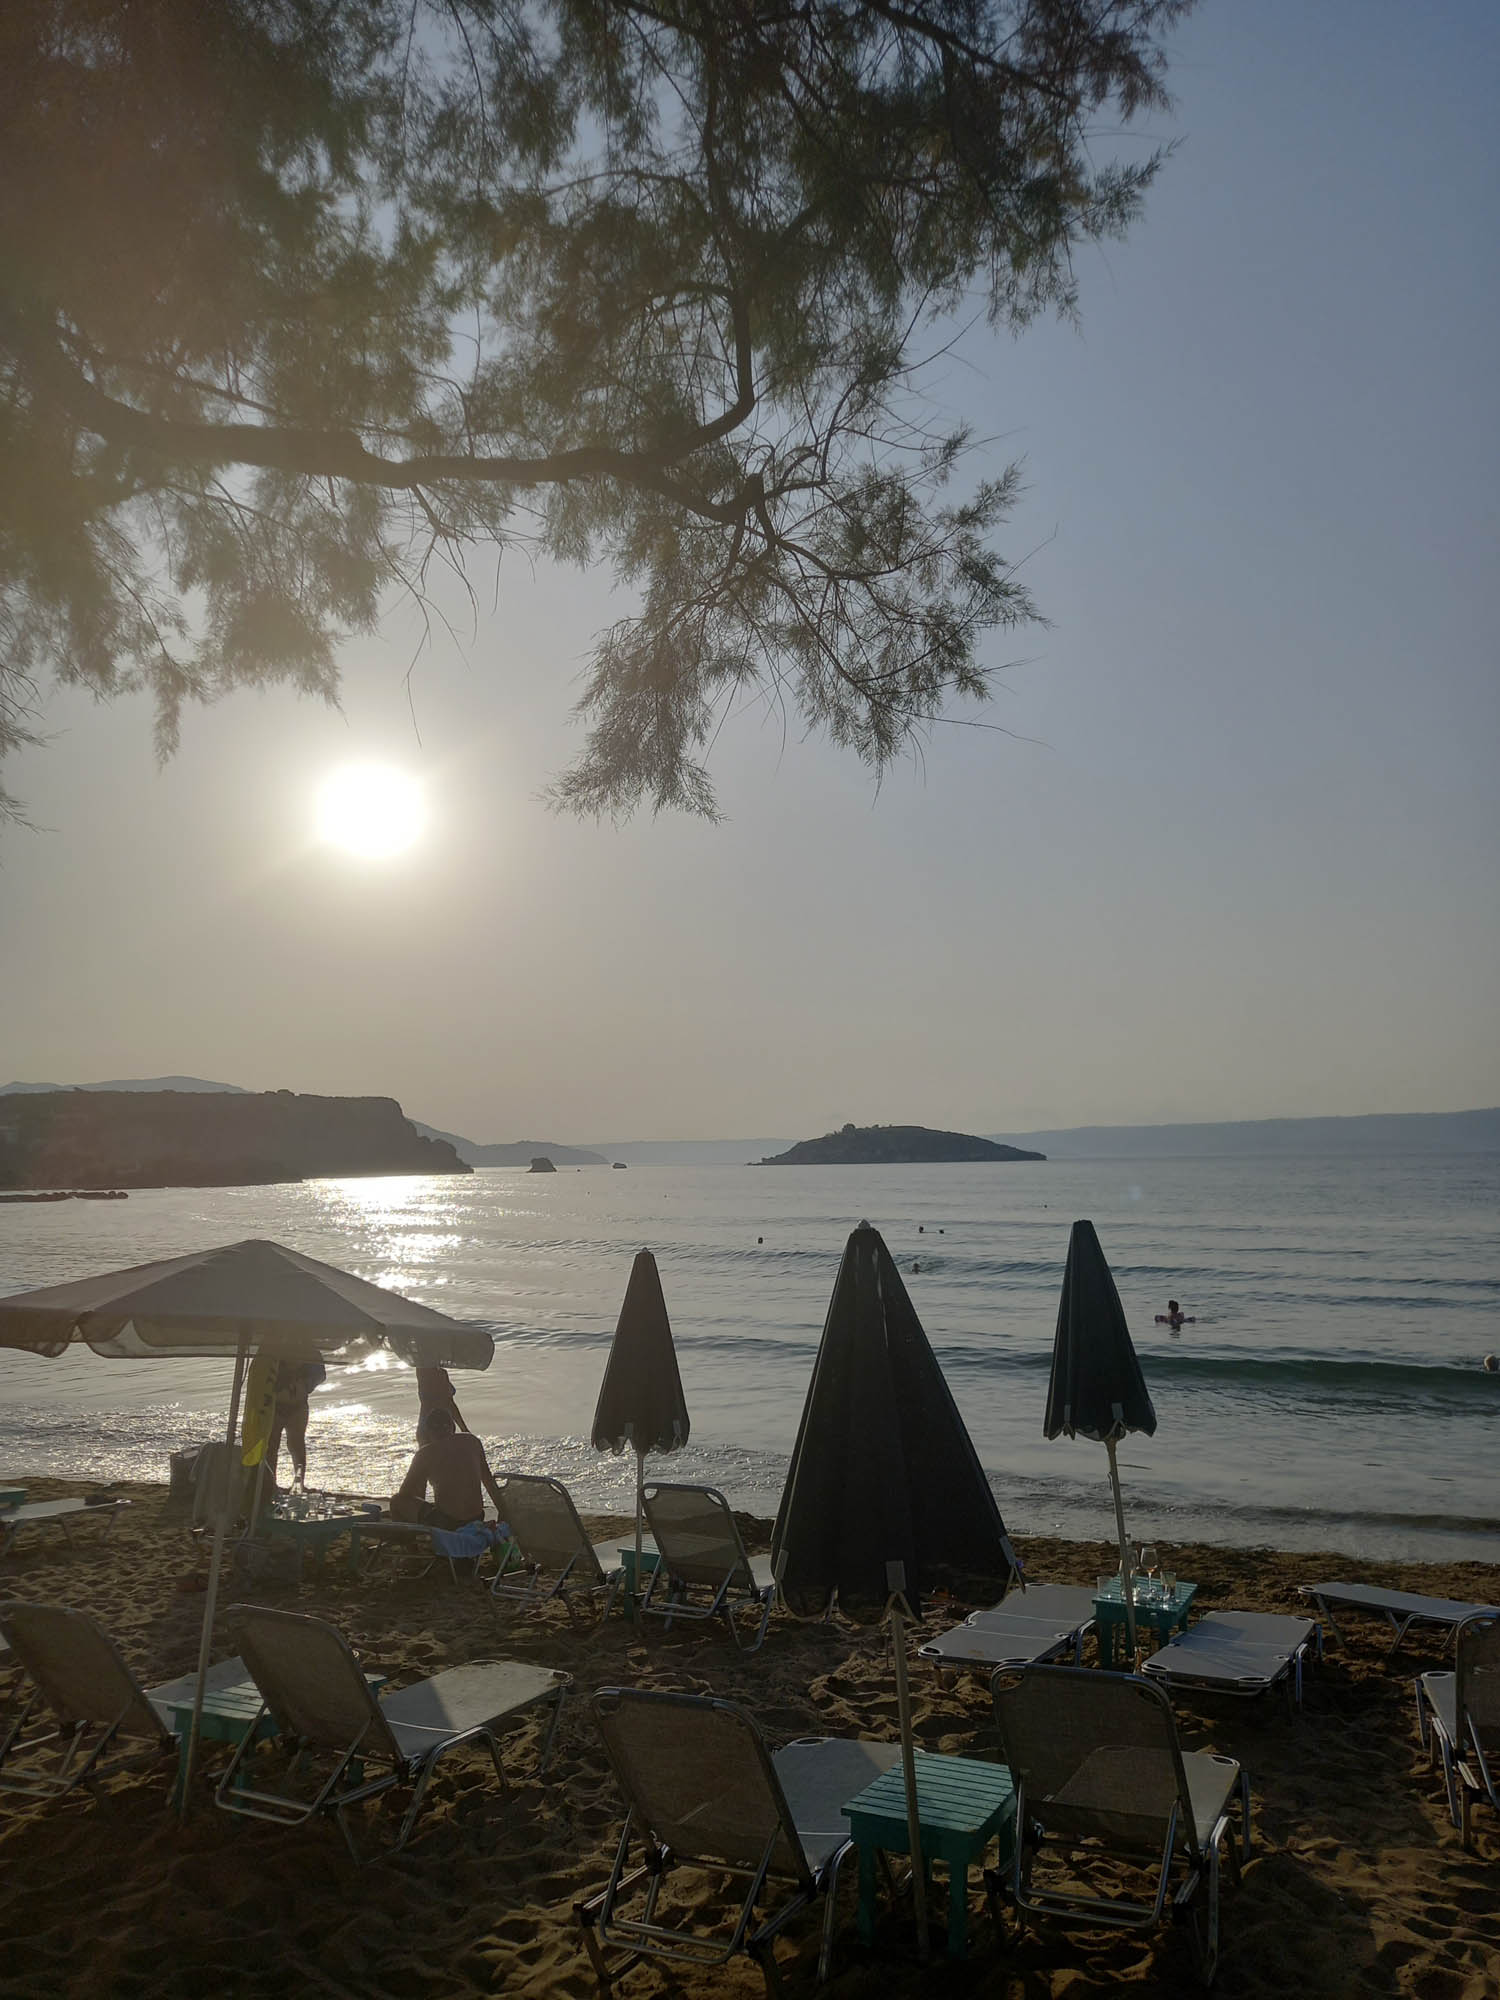 wspomnienie z greckich wakacji, plaża na krecie, zachodzące słońce odbija się w morskiej tafli